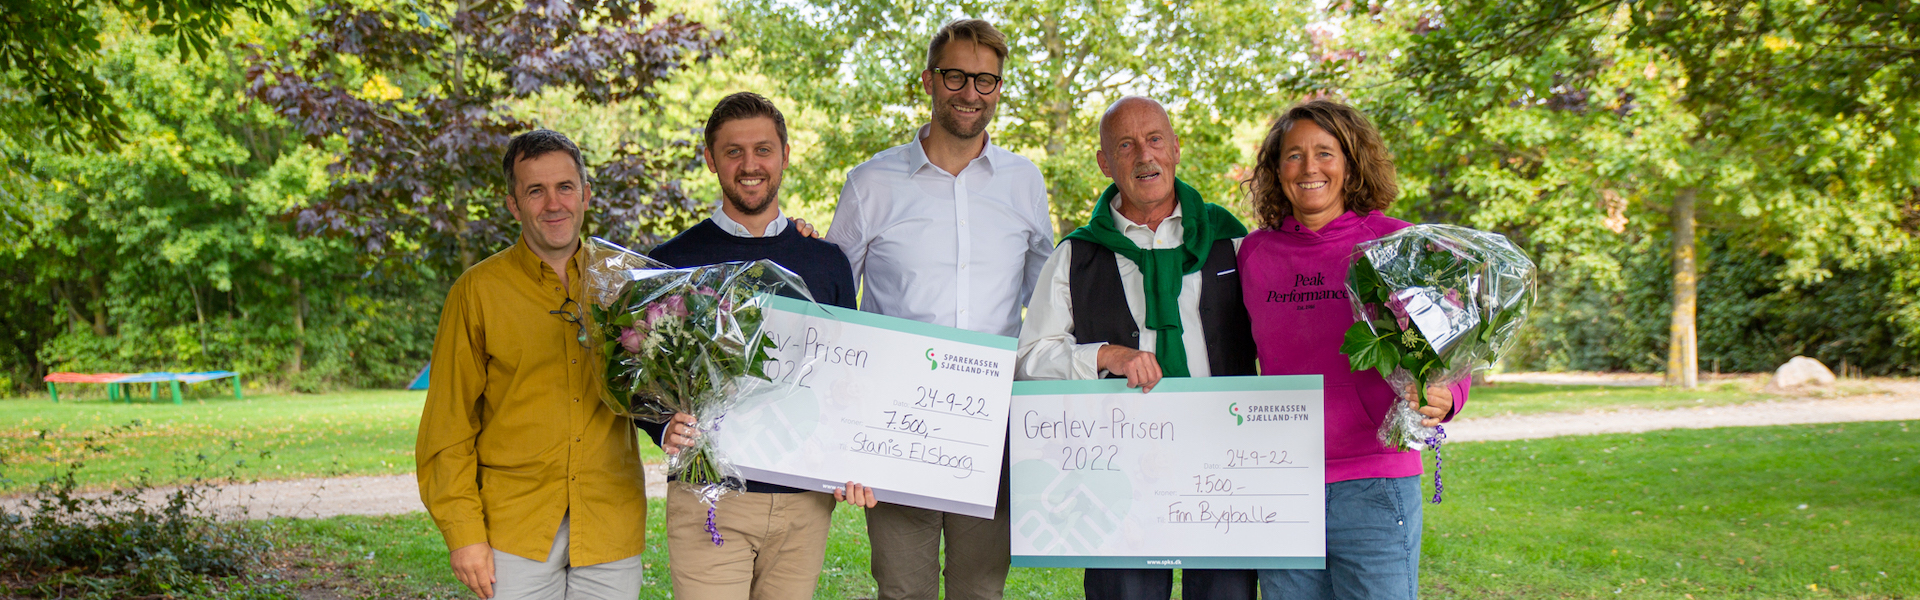 Finn Bygballe og Stanis Elsborg modtager Gerlev-prisen